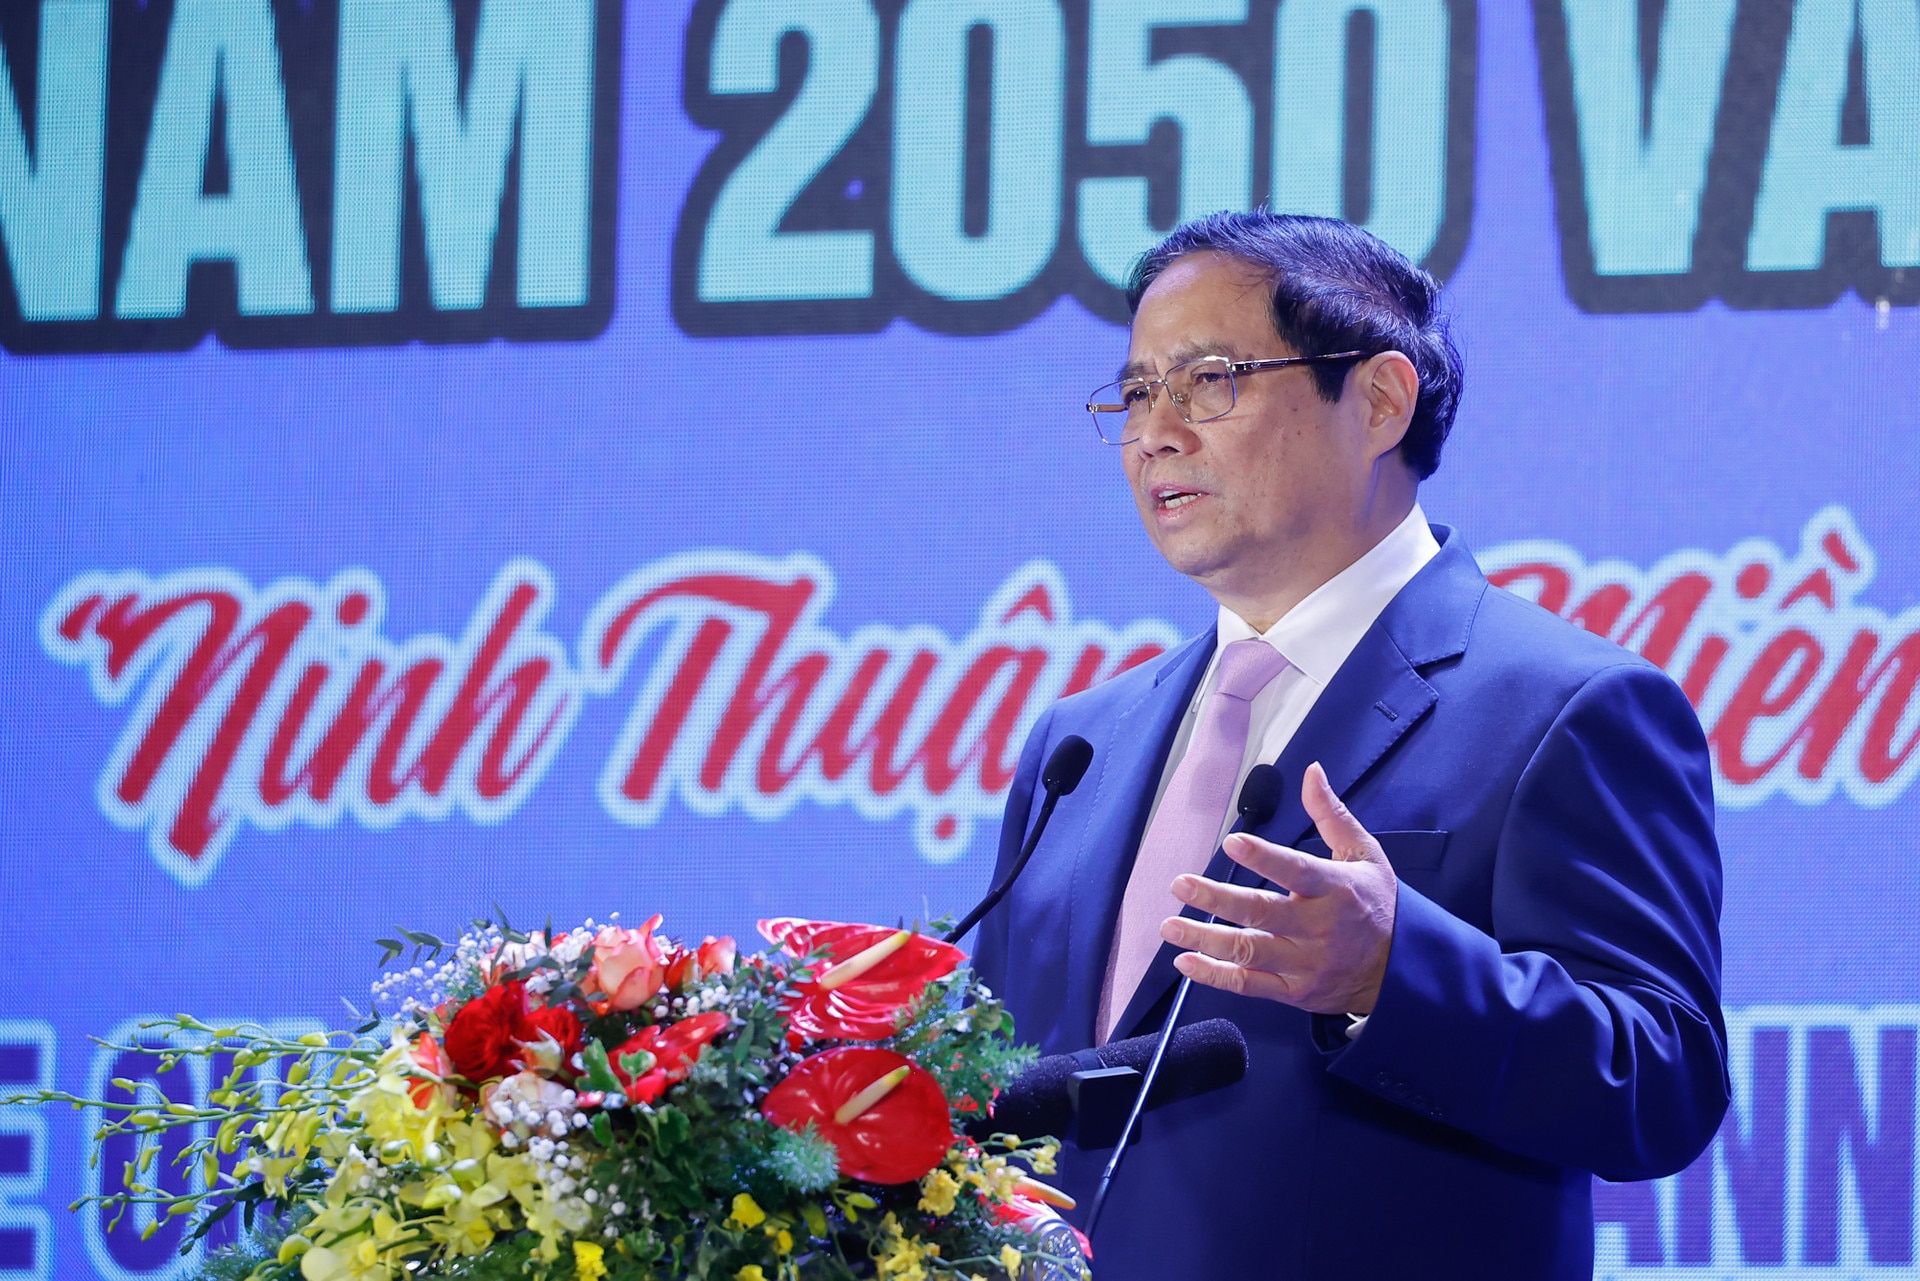 Thủ tướng kỳ vọng Ninh Thuận vượt lên mạnh mẽ, phát triển nhanh, bền vững- Ảnh 8.